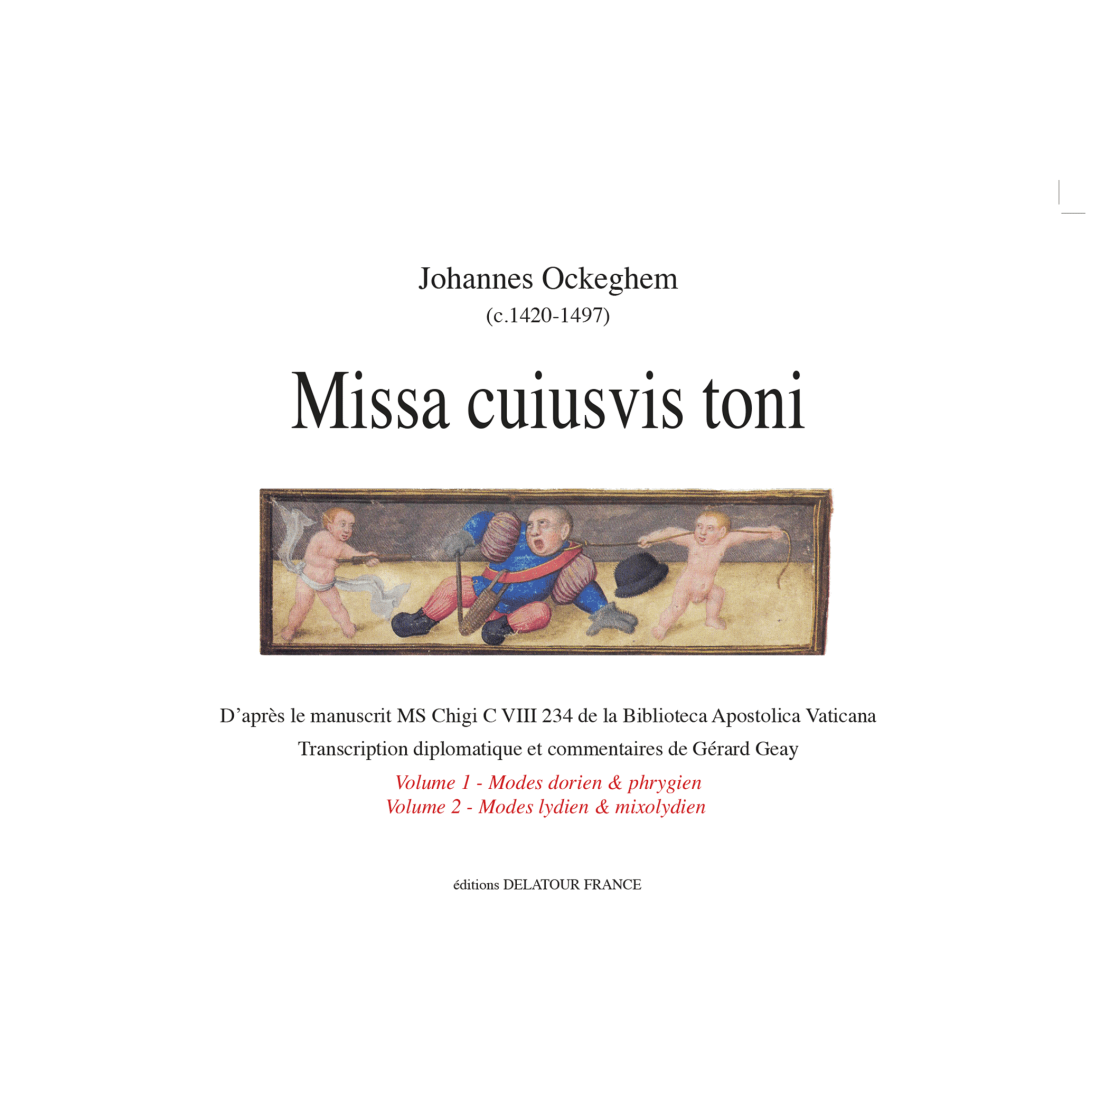 Missa cuiusvis toni